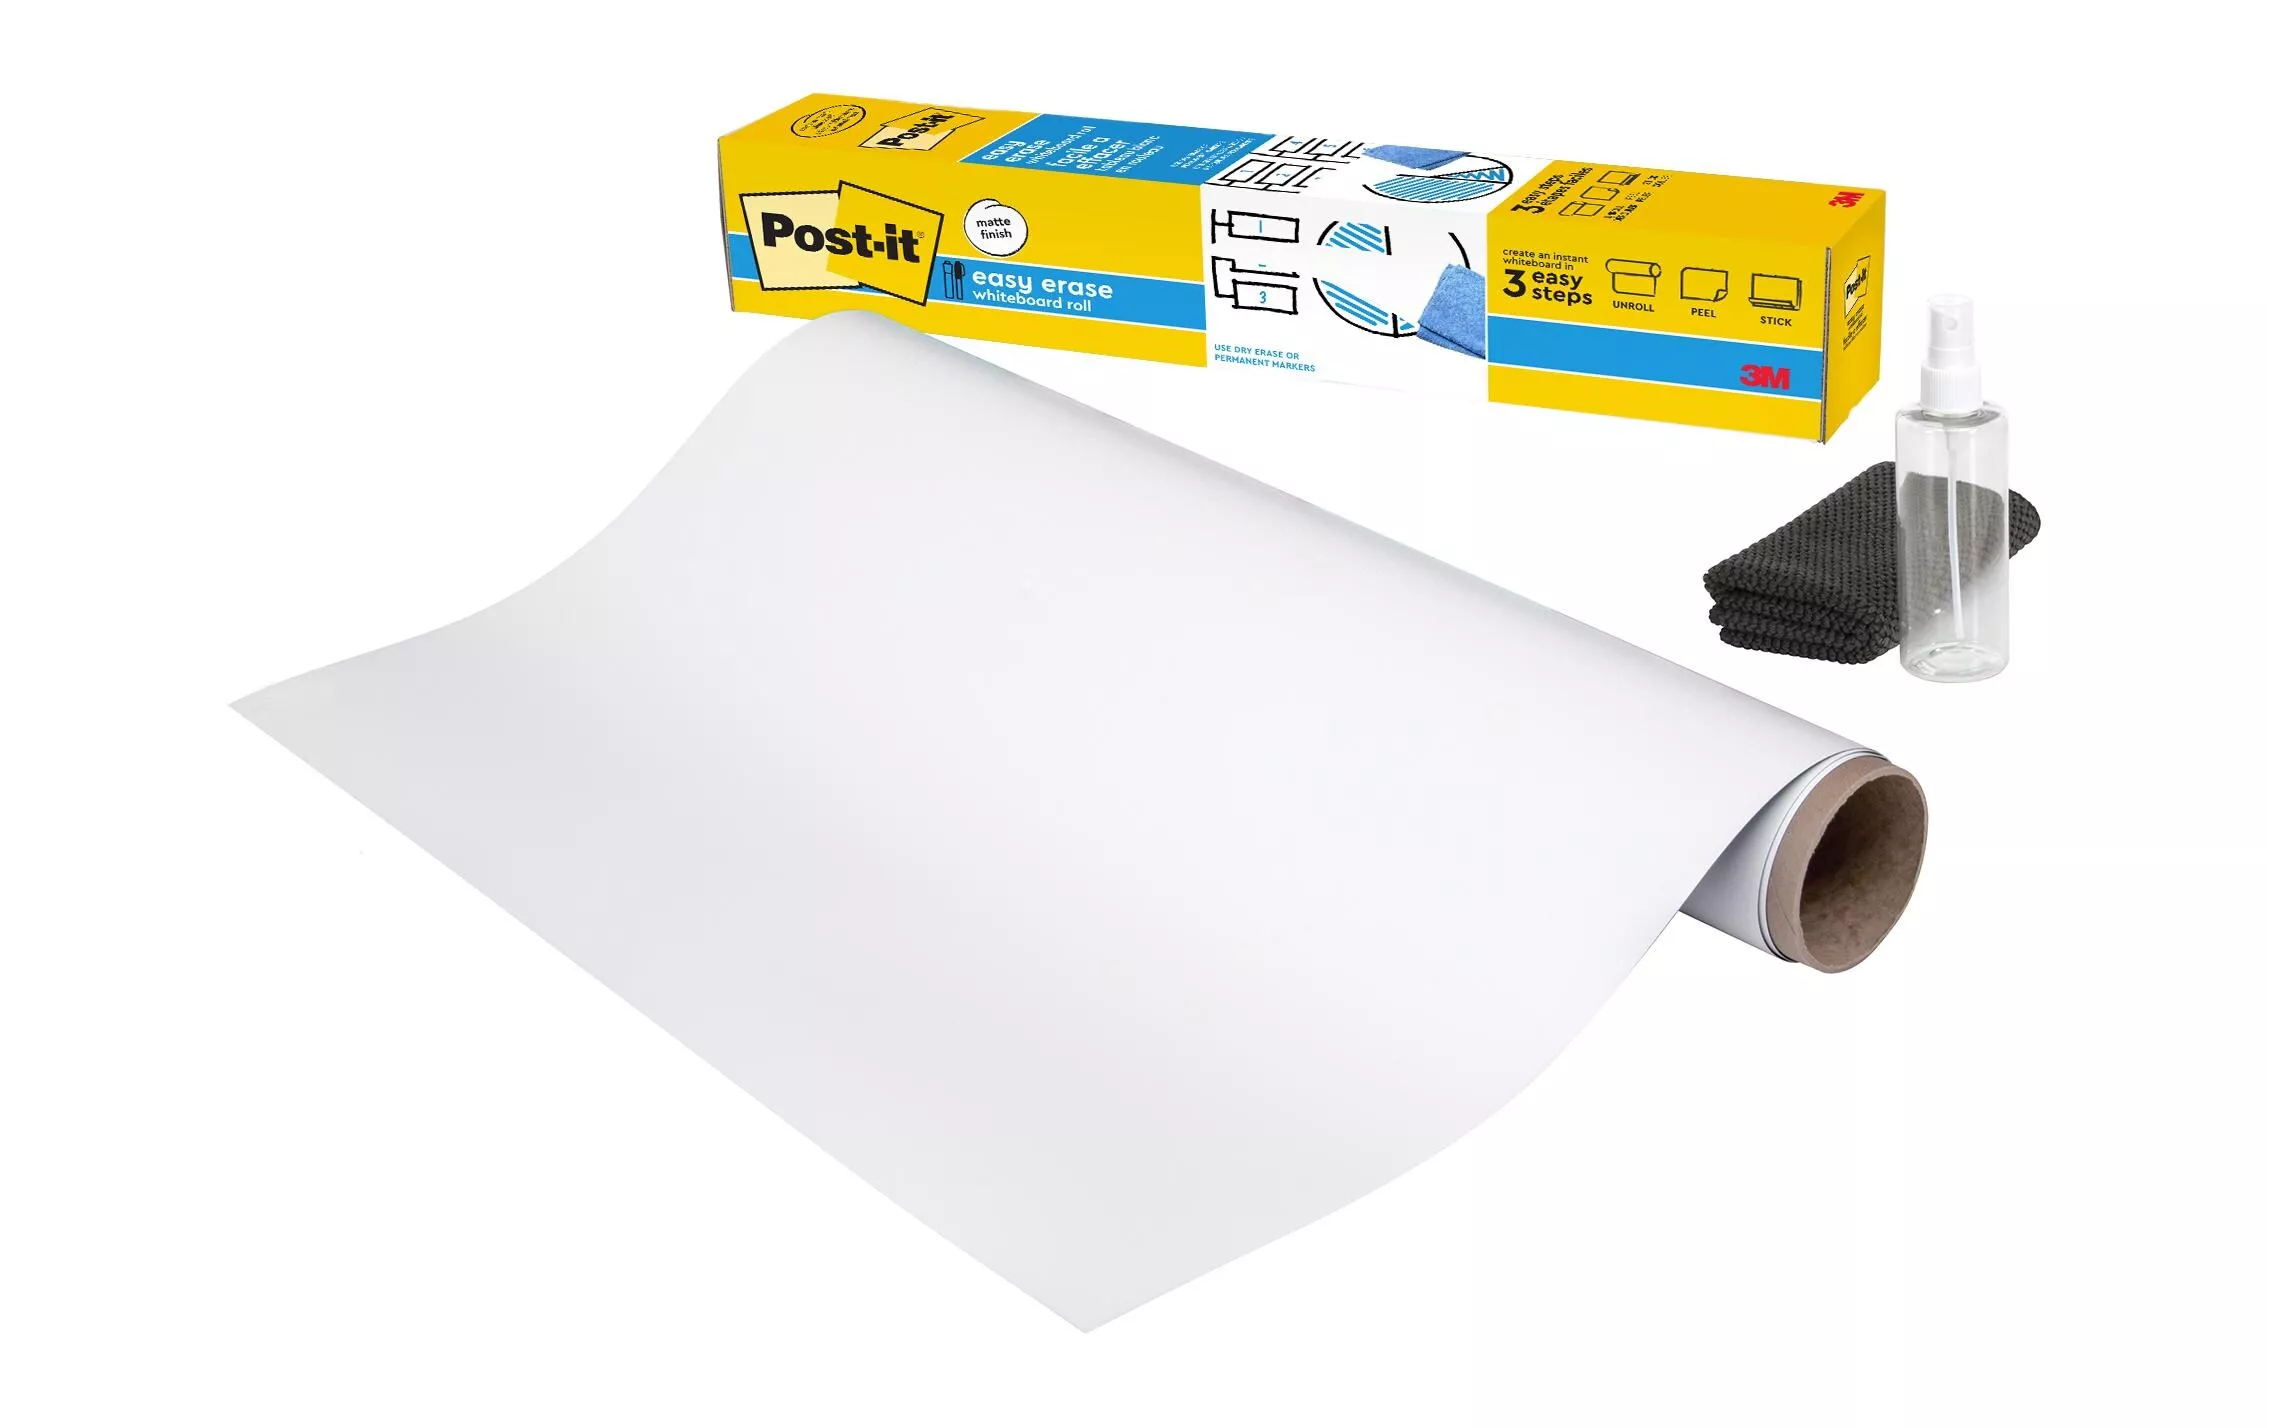 Feuille pour tableau blanc Post-it Flex Write 121.9 x 182.9 cm, 1 rouleau